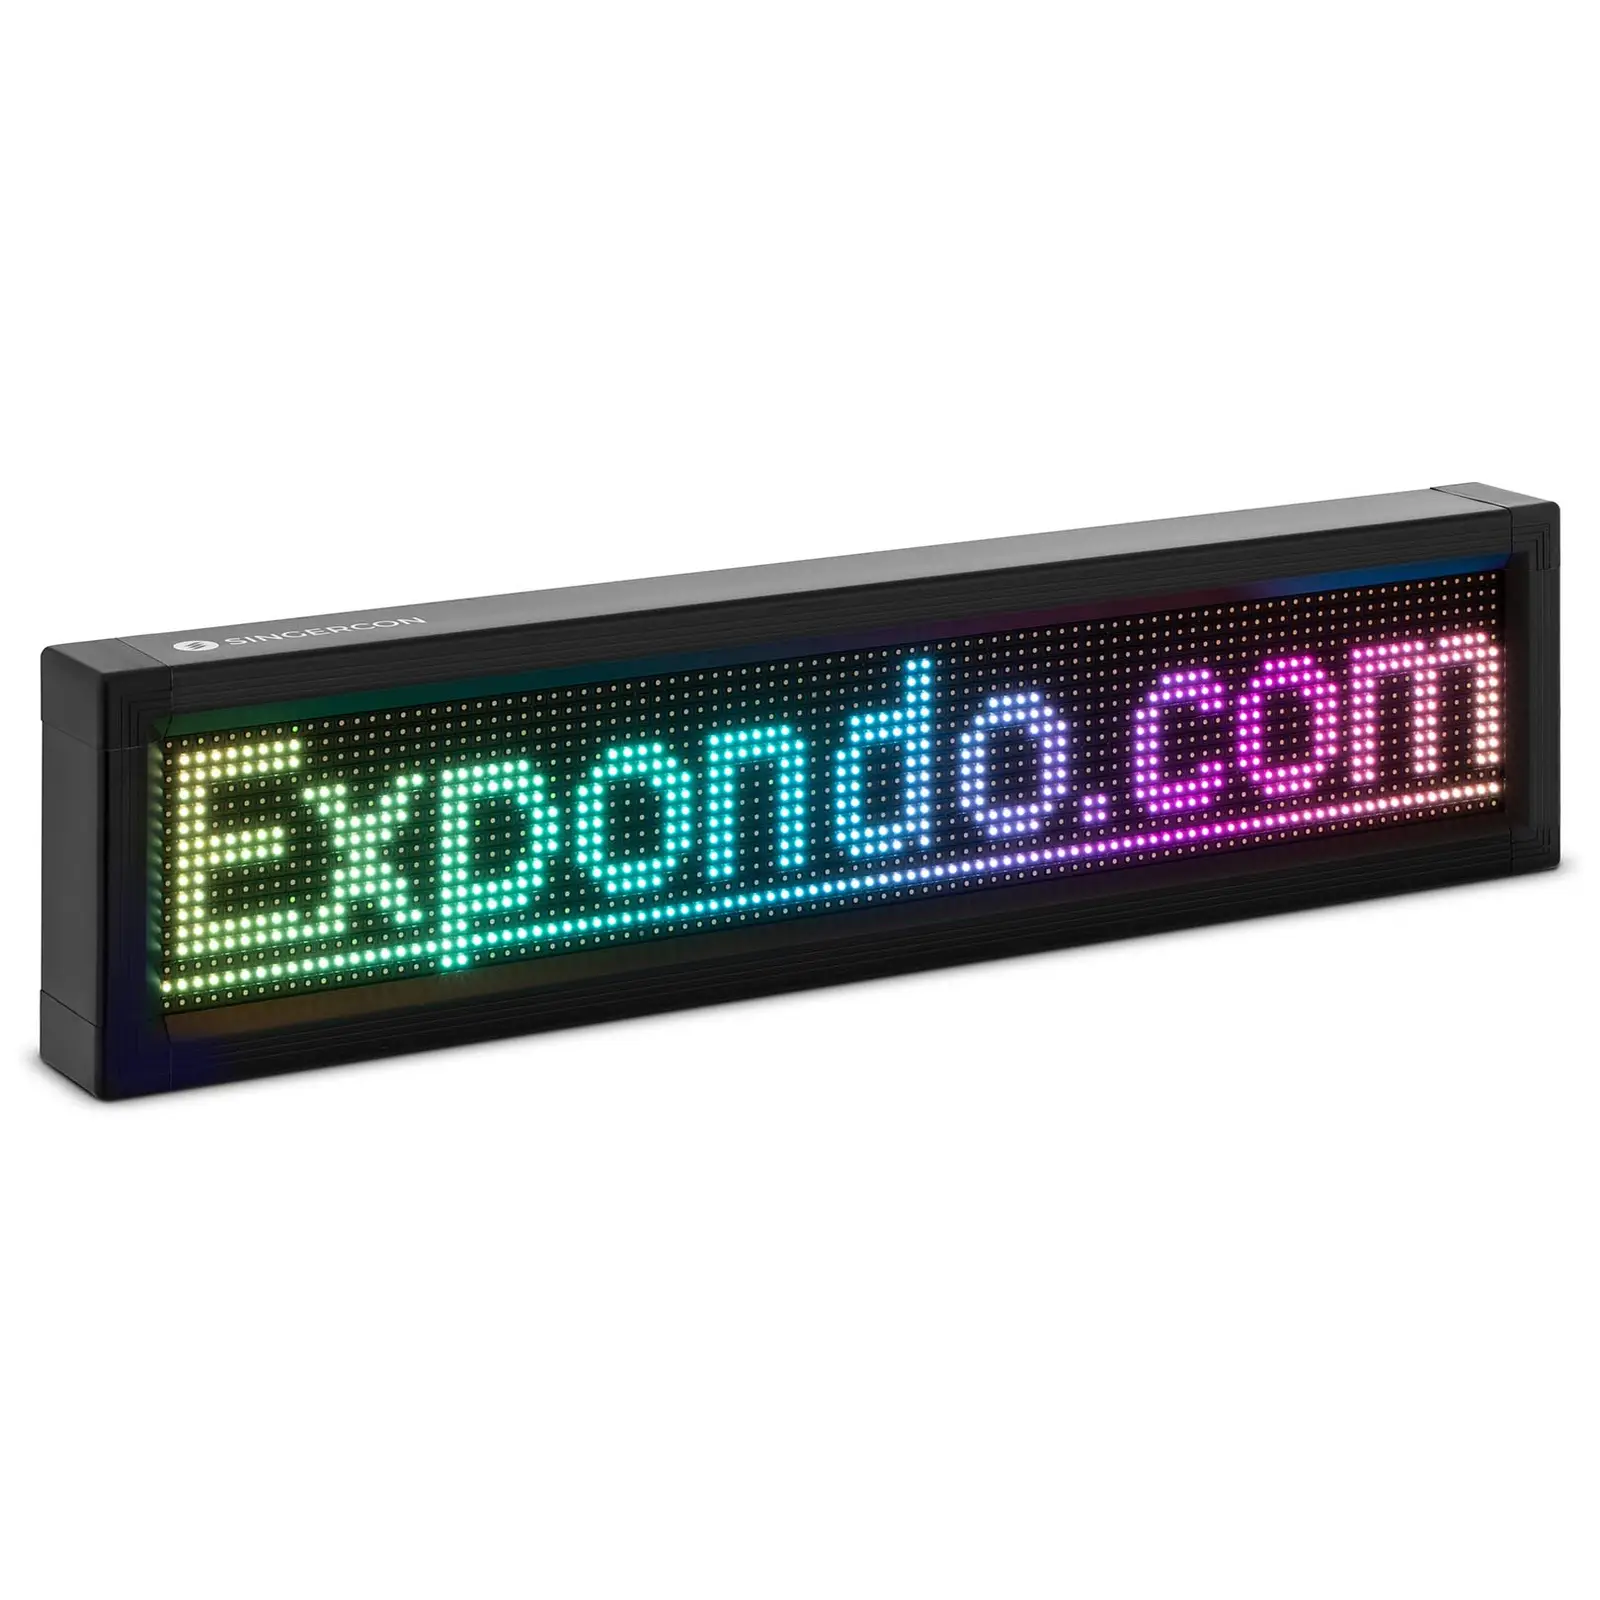 LED-skylt - 96 x 16 färgade LED-dioder - 67 x 19 cm - Programmerbar via iOS/Android